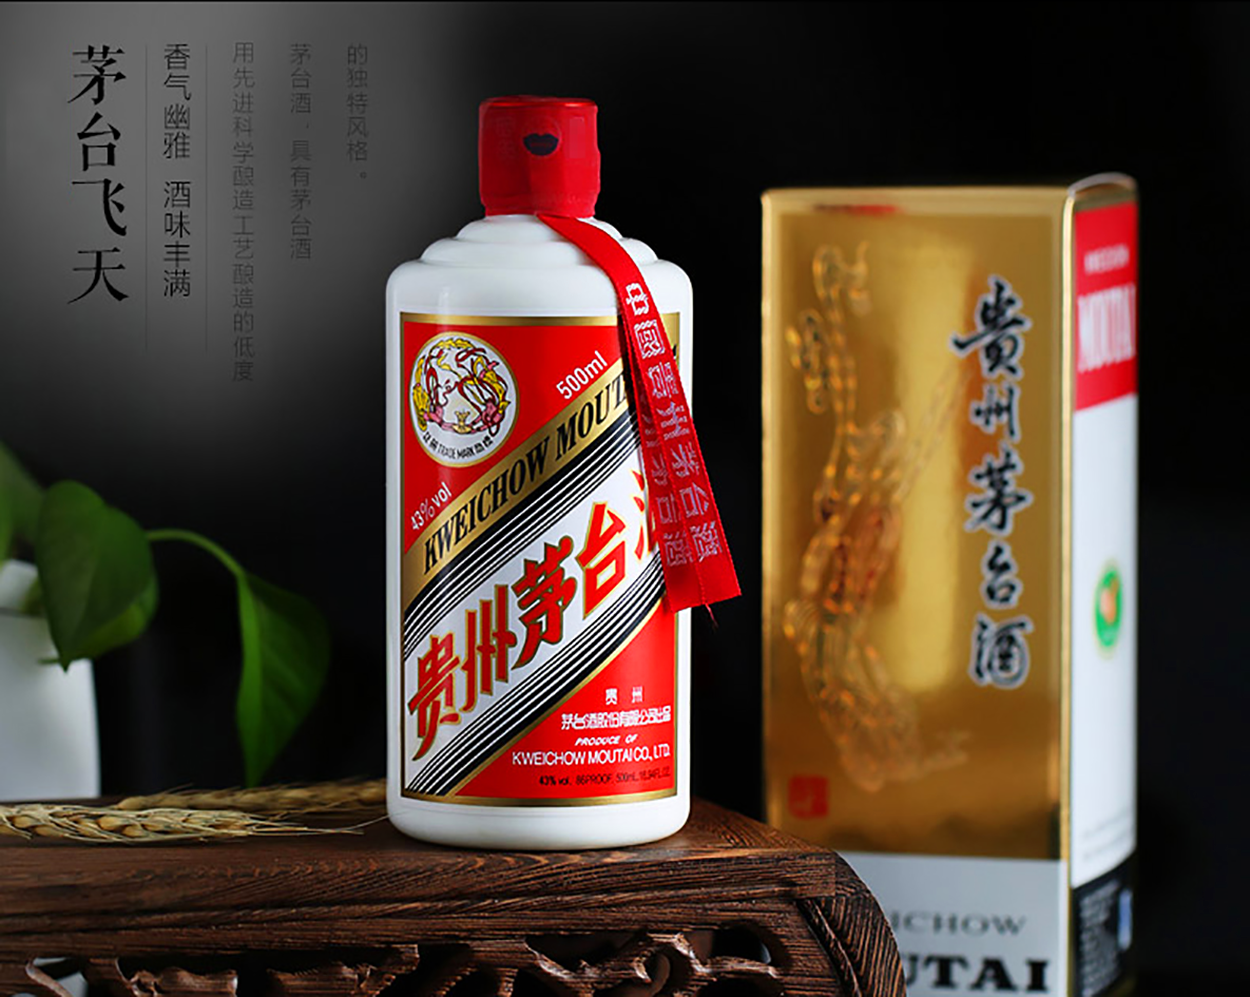 贵州茅台酱香酒包装设计欣赏